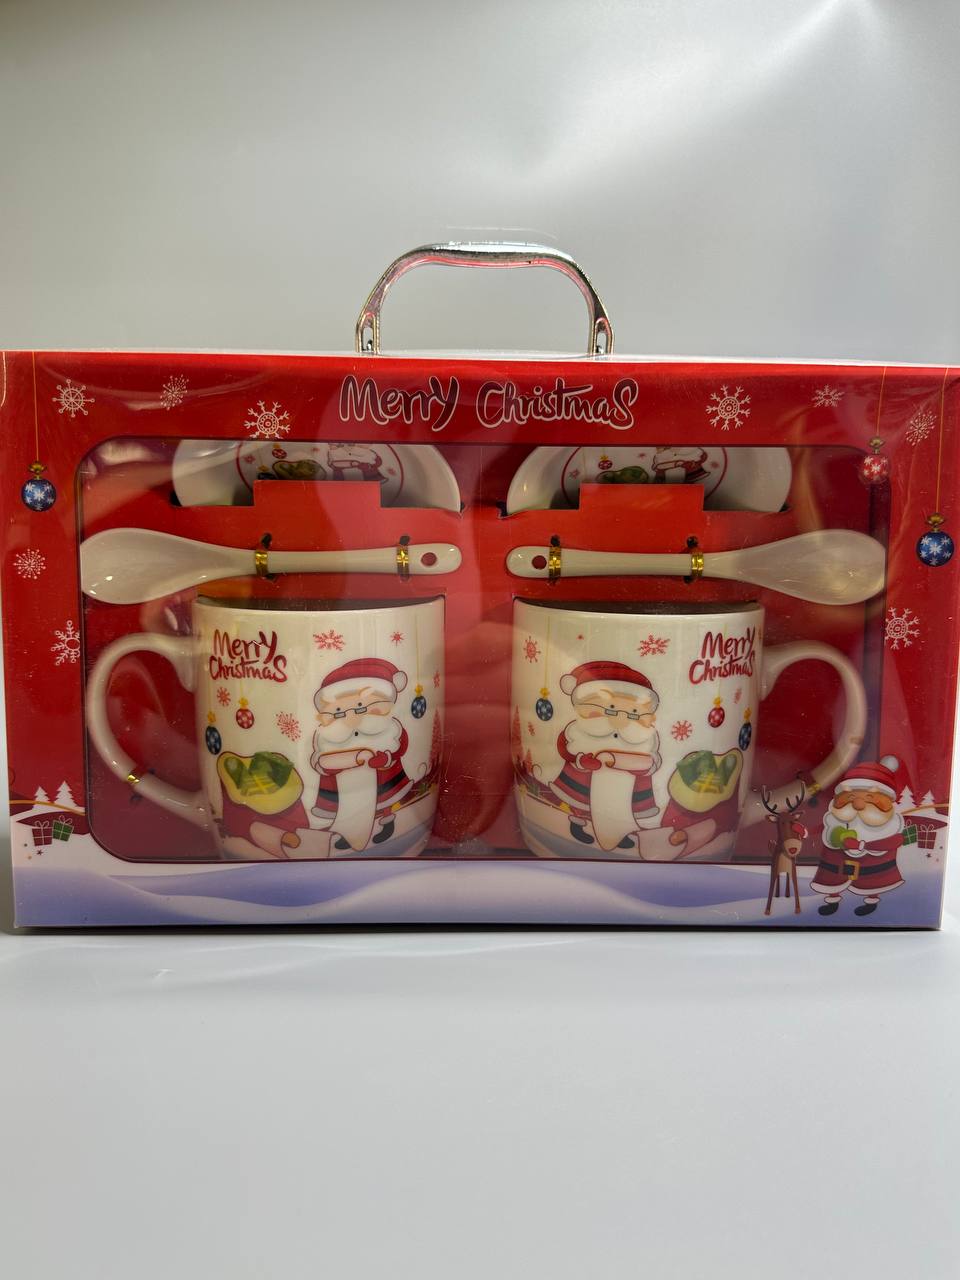 Набор кермических чашек 2 шт. 350мл с блюдцами, ложками "Санта Клаус" в подар.чемодане, 4 в Красный Unison (HK-651-B)